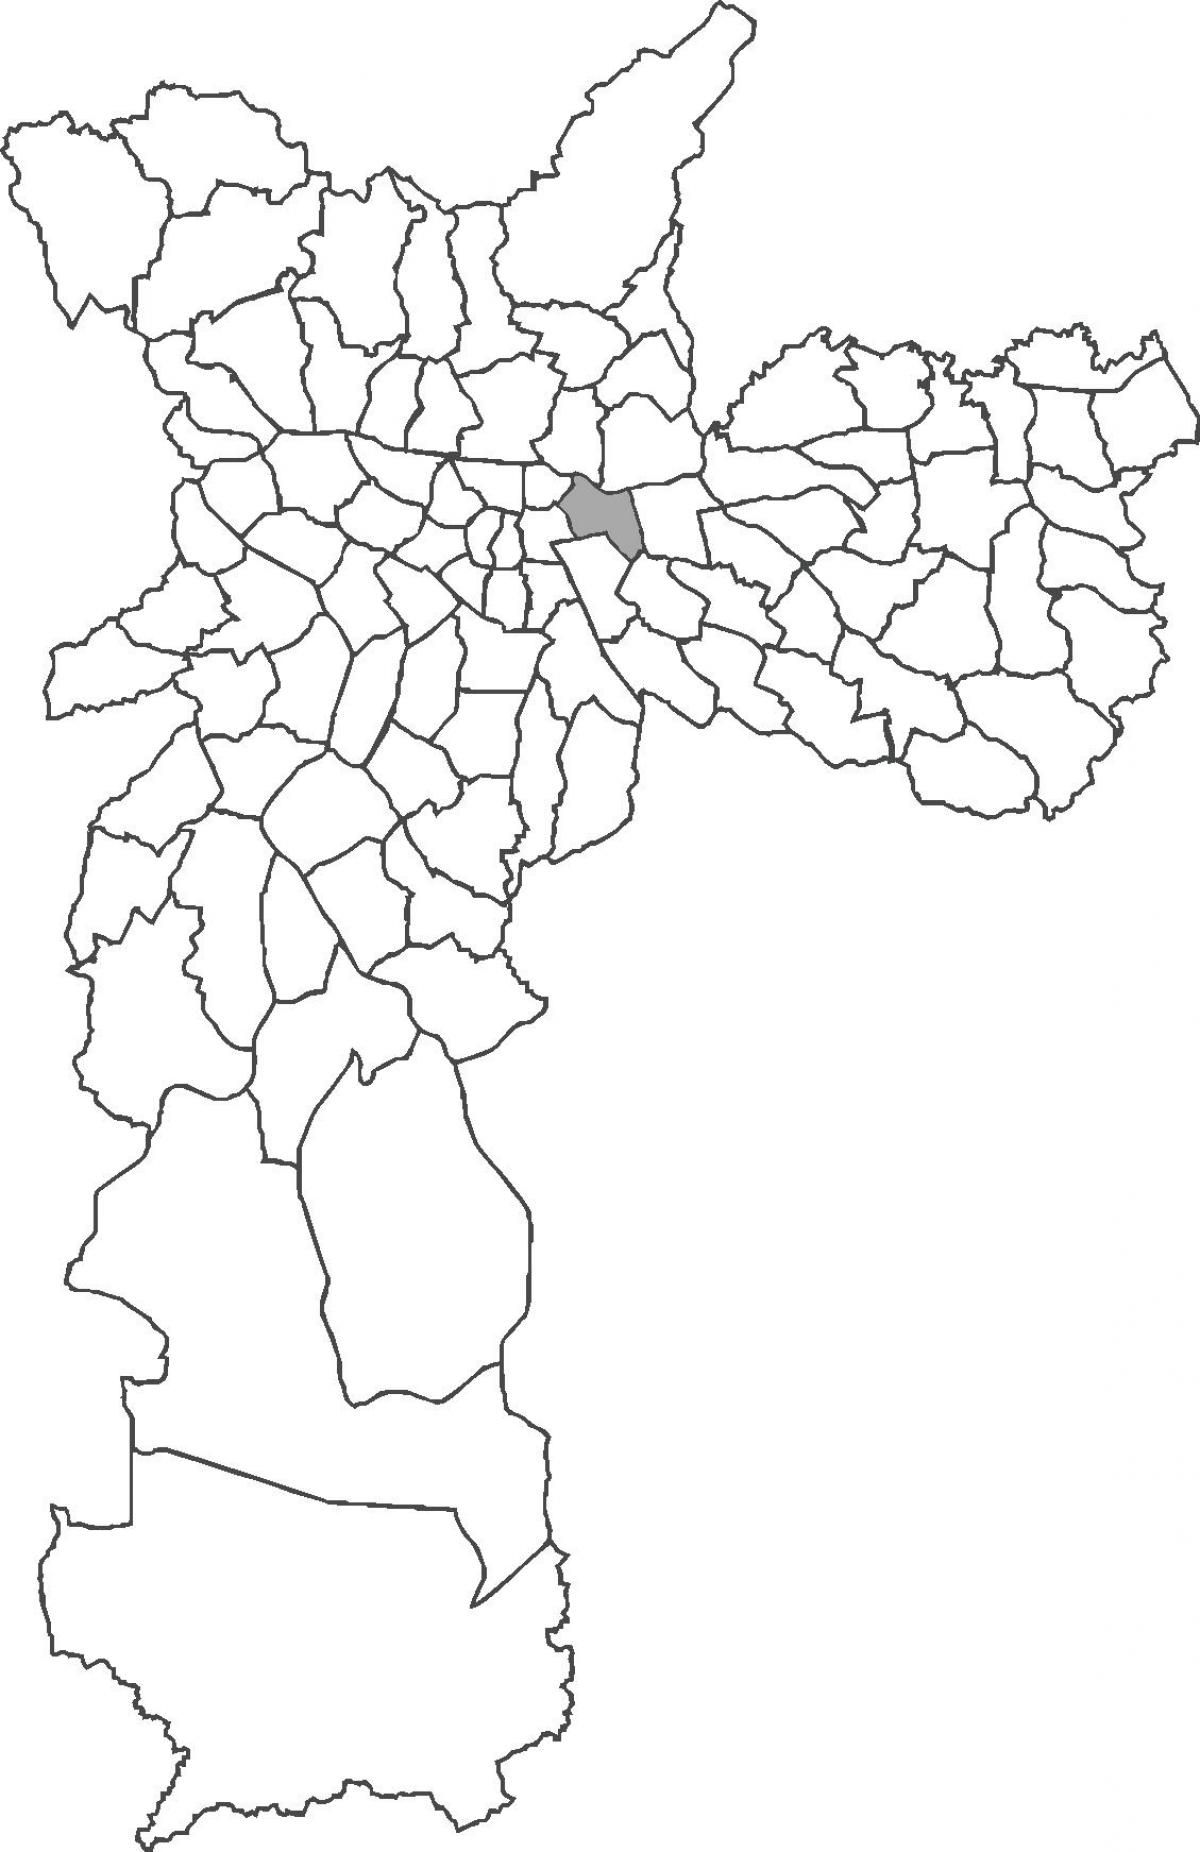 Belém haritası